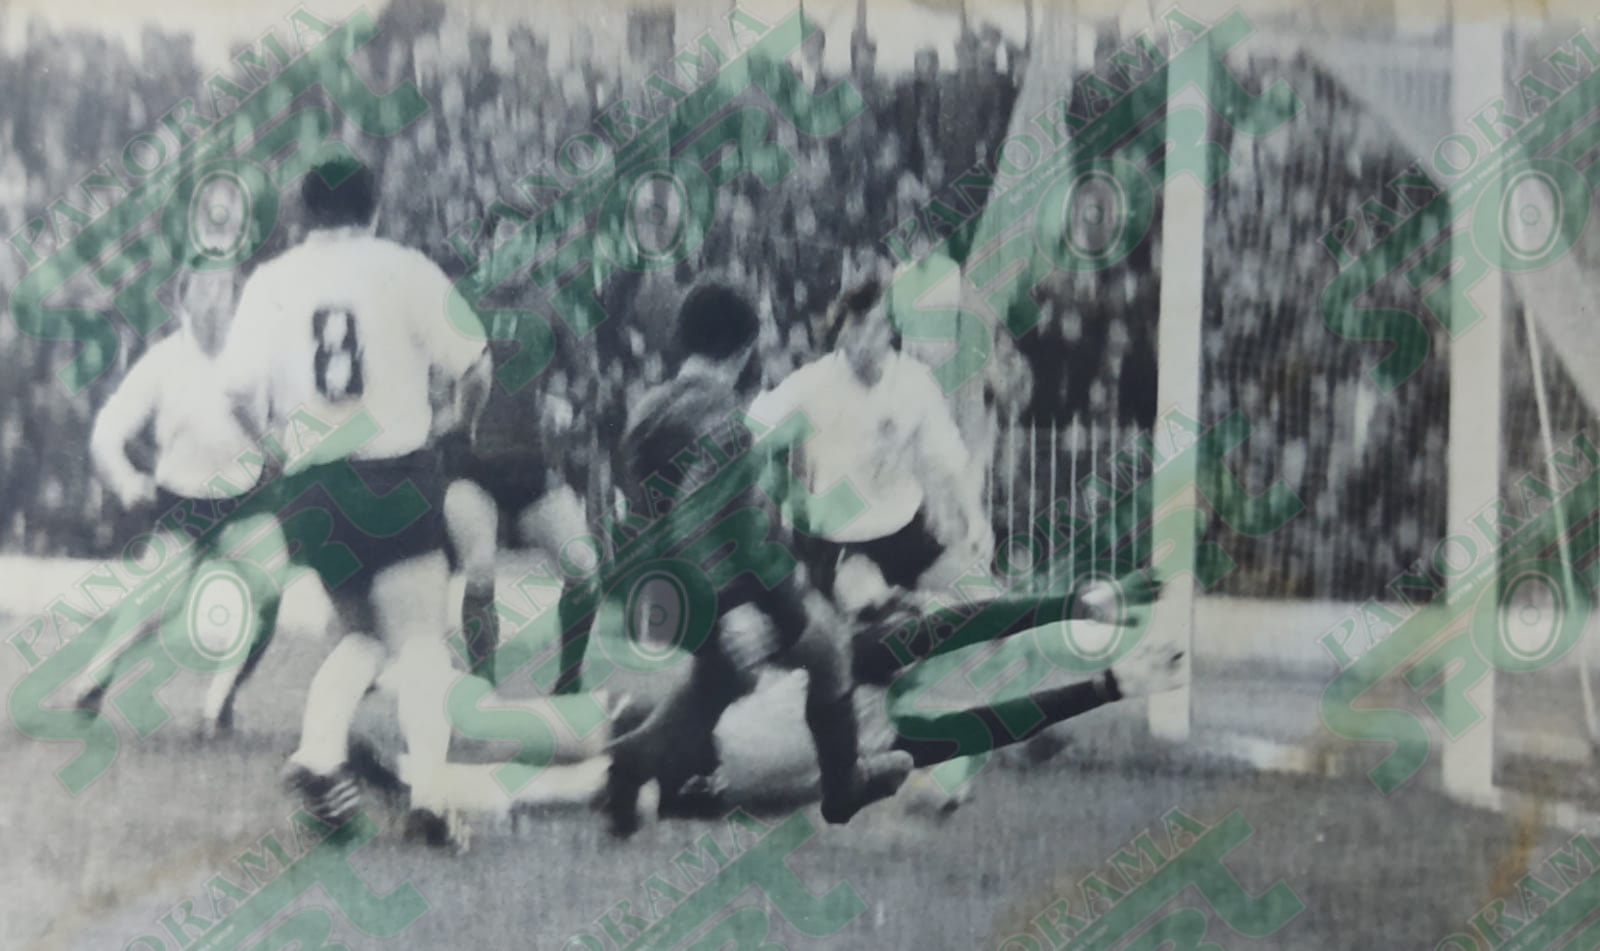 STADIUMI “VOJO KUSHI”. Shkodër. 30 prill 1983. Shqipëria - RF e Gjermanisë 1-1. Demollari duke shënuar golin. FOTO: PETRIT OMERI.